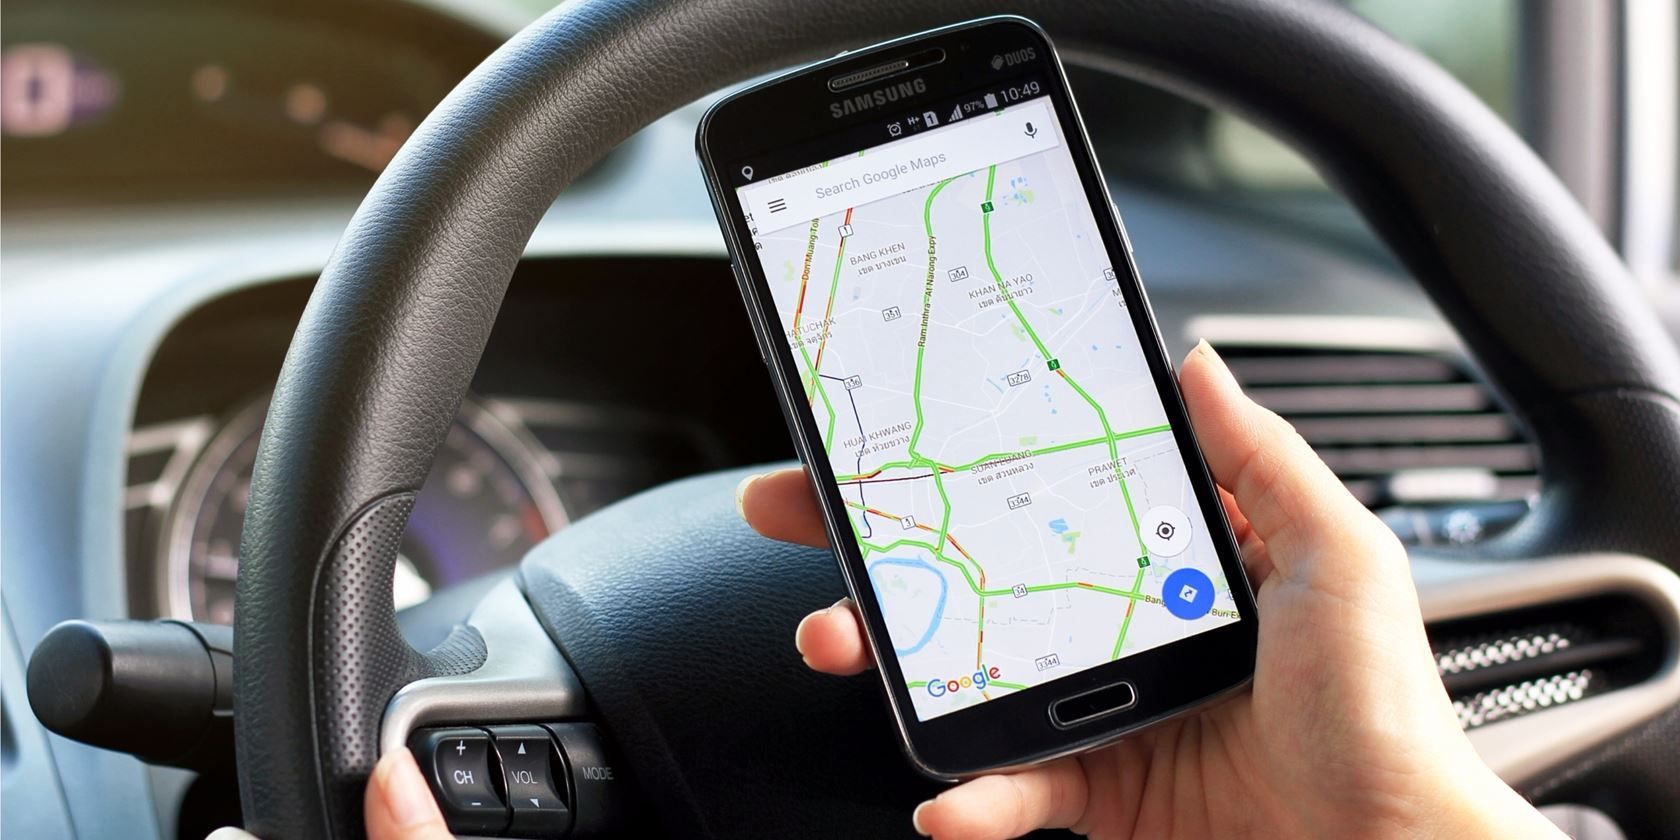 Vuggeviser Ubevæbnet vasketøj The 8 Best Free Offline GPS Navigation Apps for Android